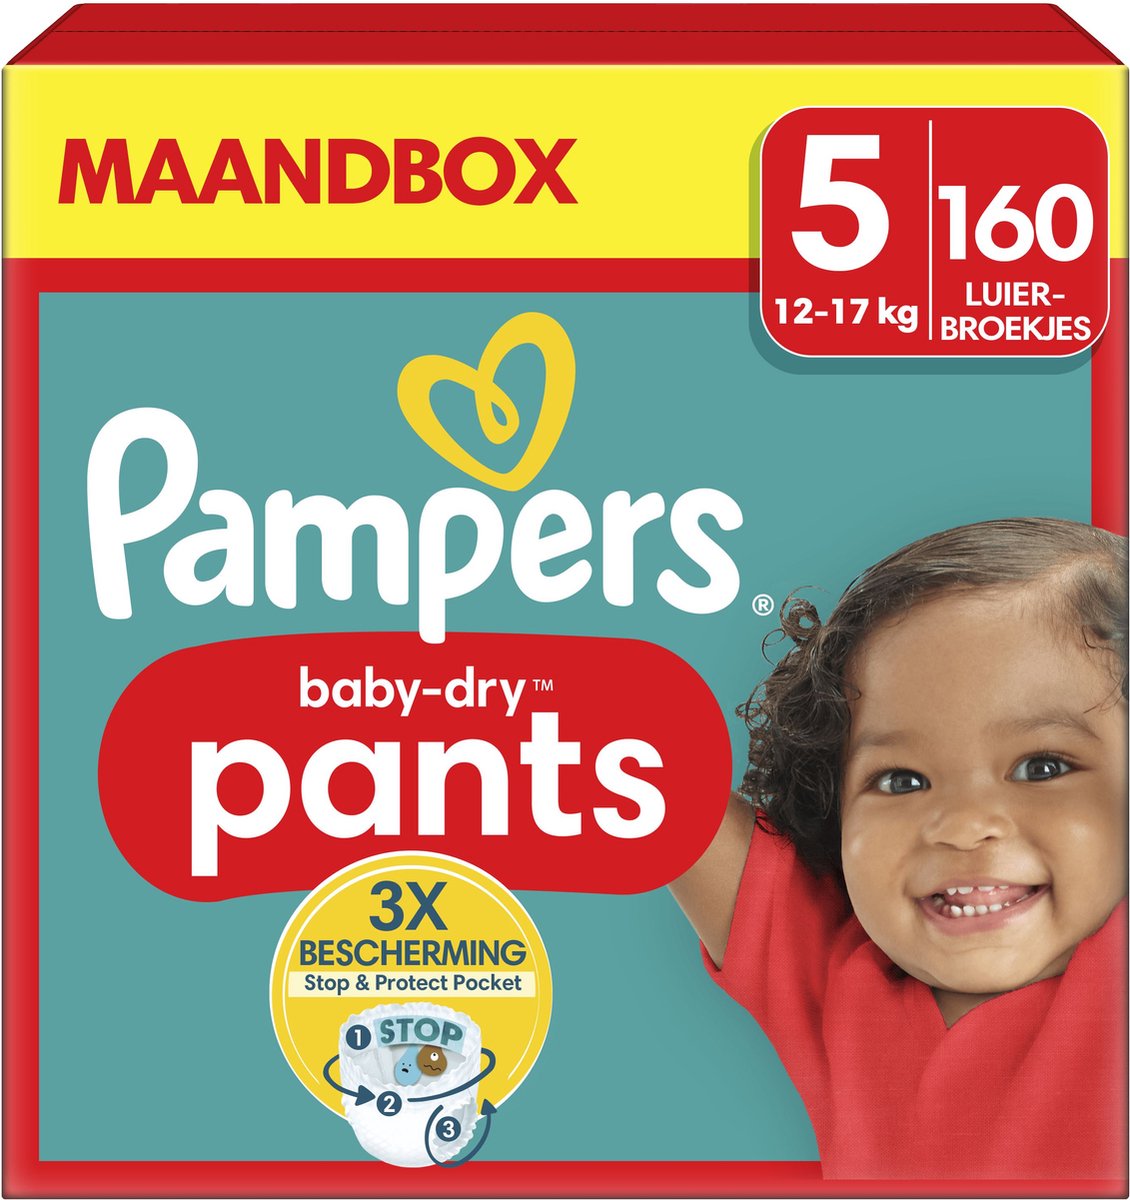 Pampers Baby-Dry Pants - Maat 5 (12kg-17kg) - 160 Luierbroekjes - Maandbox - Pampers